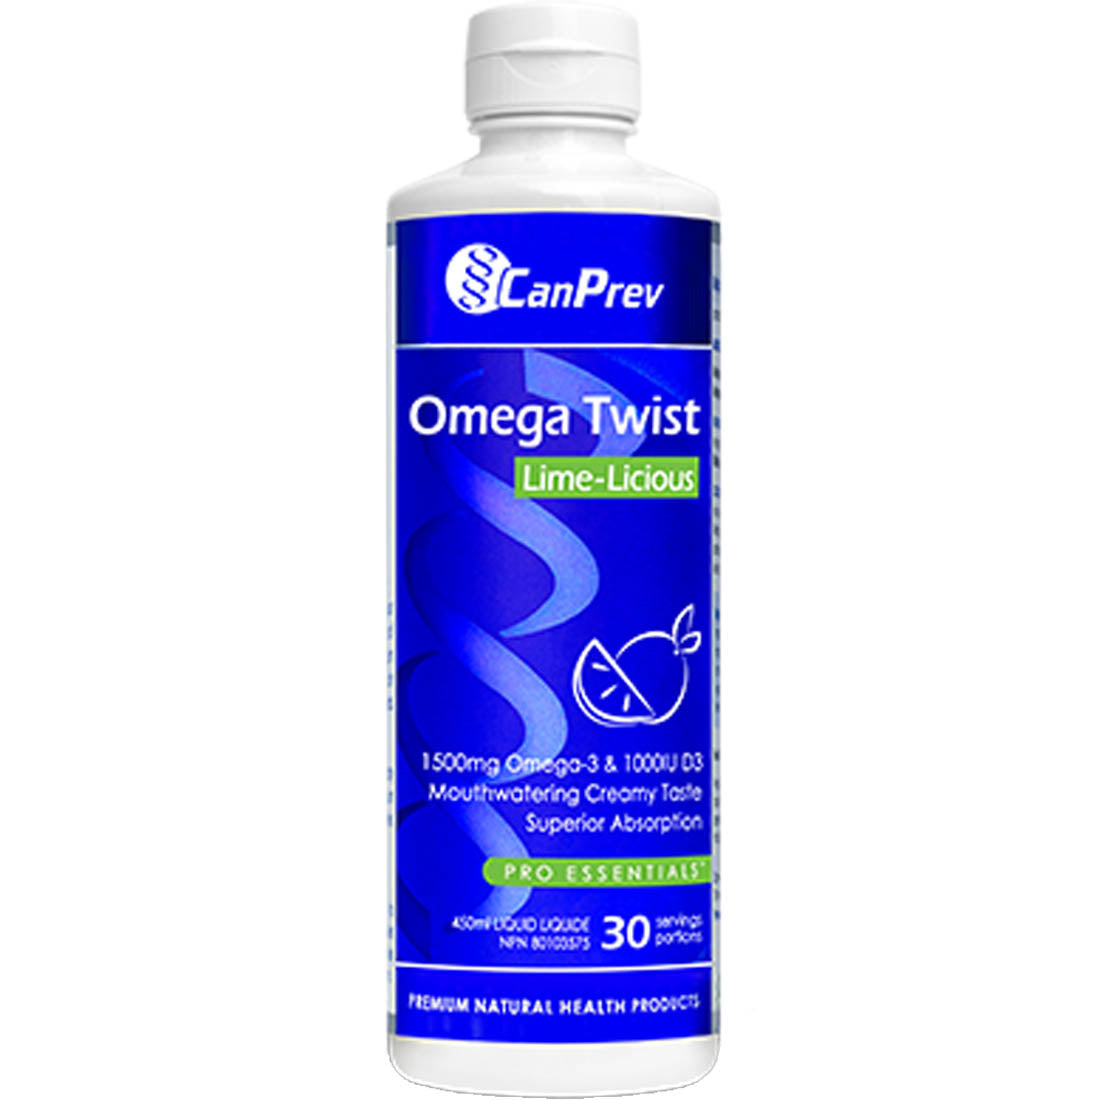 CanPrev Omega Twist Fish Oil Liquid Omega-3 Plus Vitamin D3, 225ml